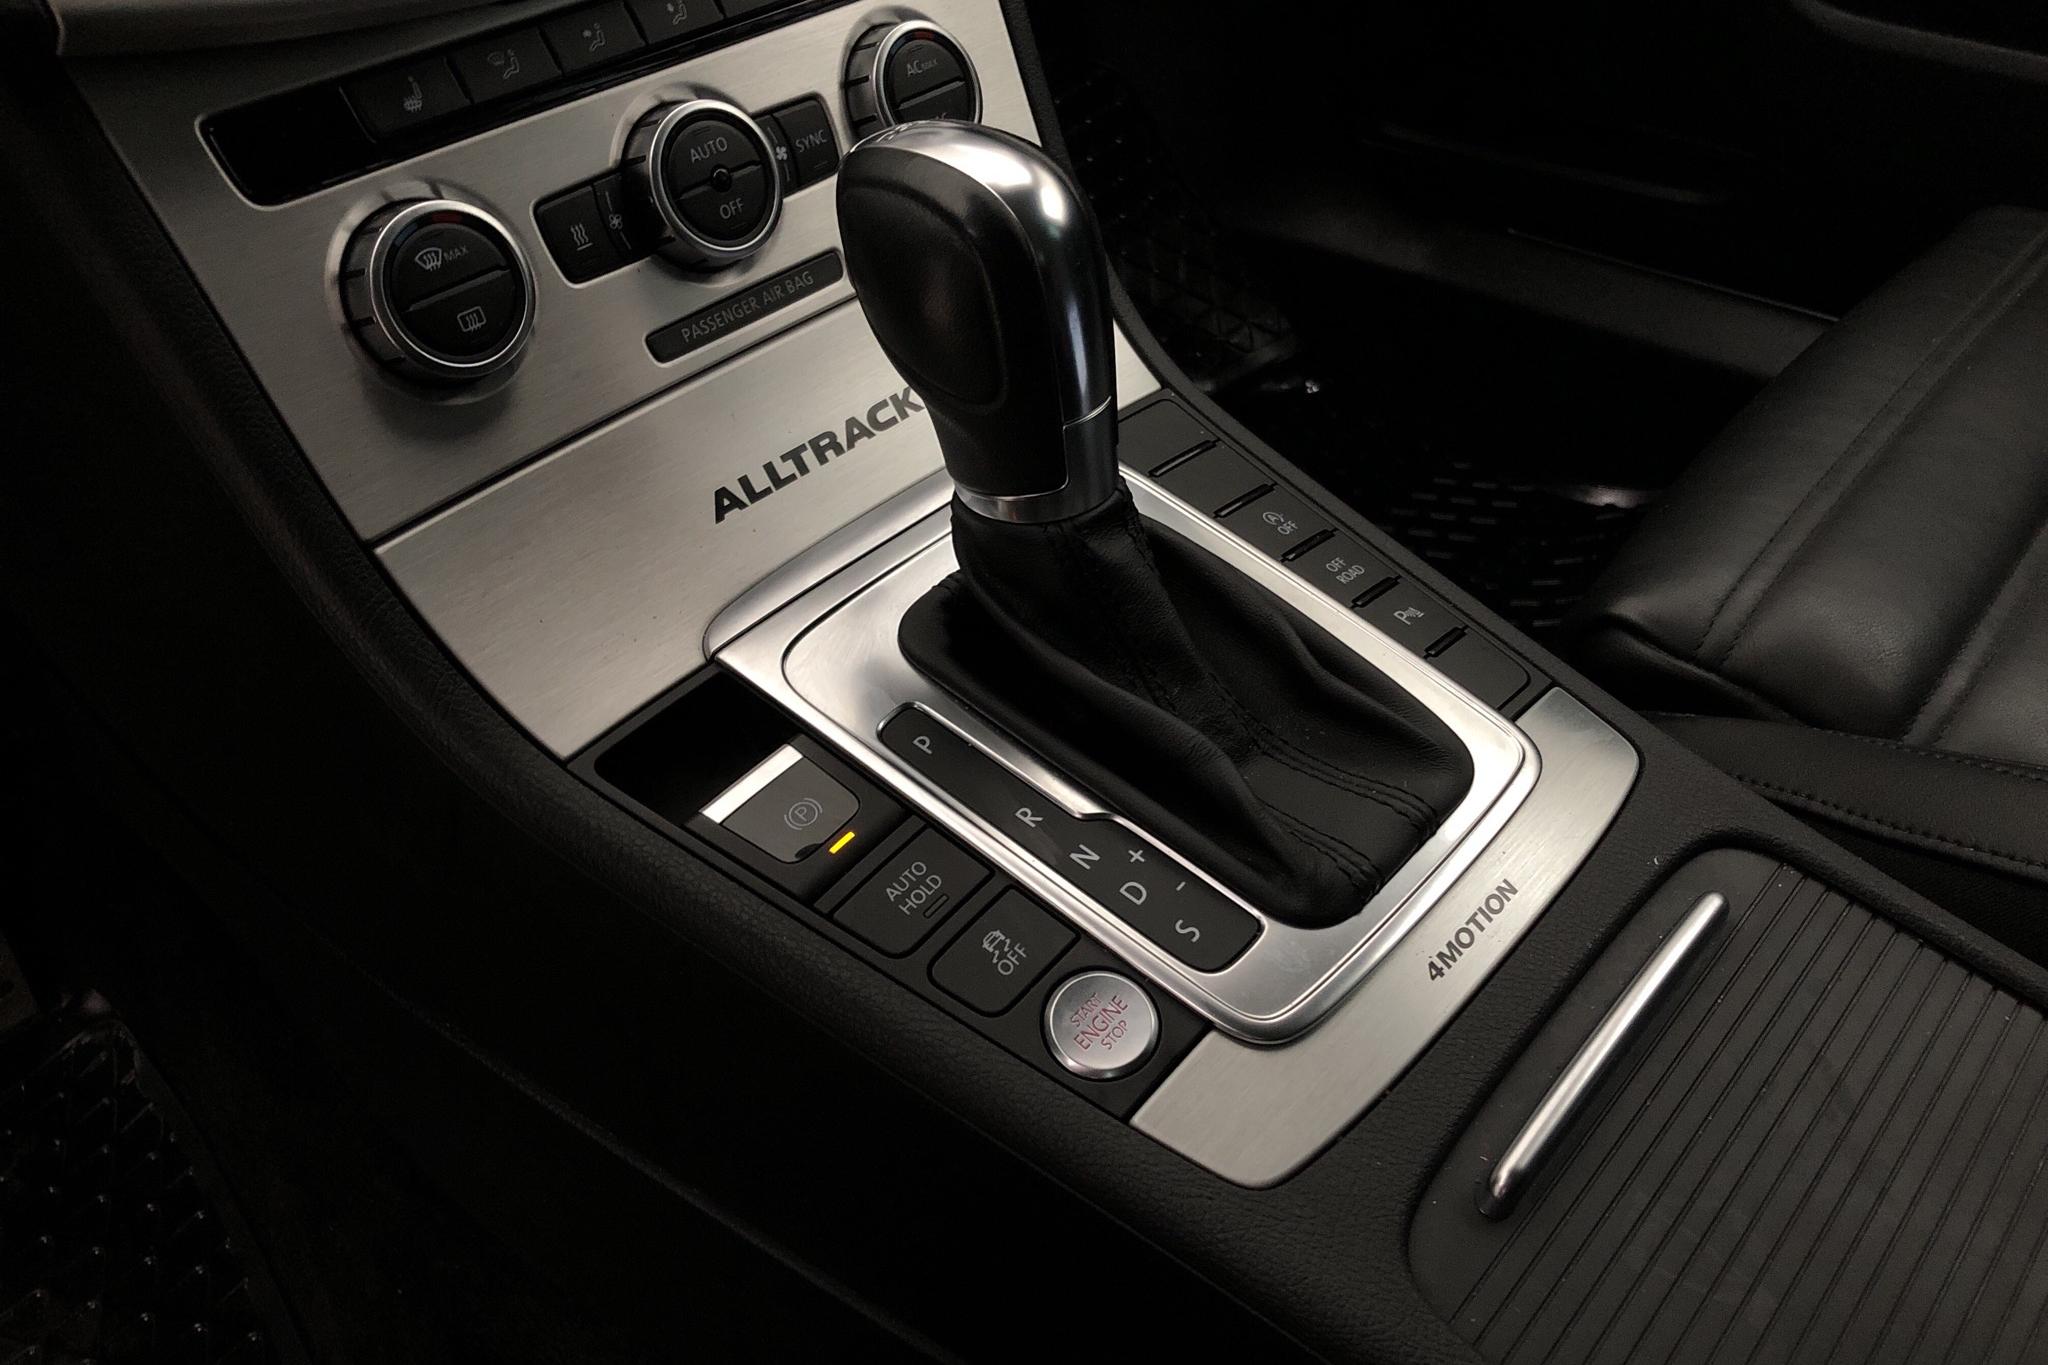 VW Passat Alltrack 2.0 TDI BlueMotion Technology 4Motion (170hk) - 124 600 km - Automatic - silver - 2012